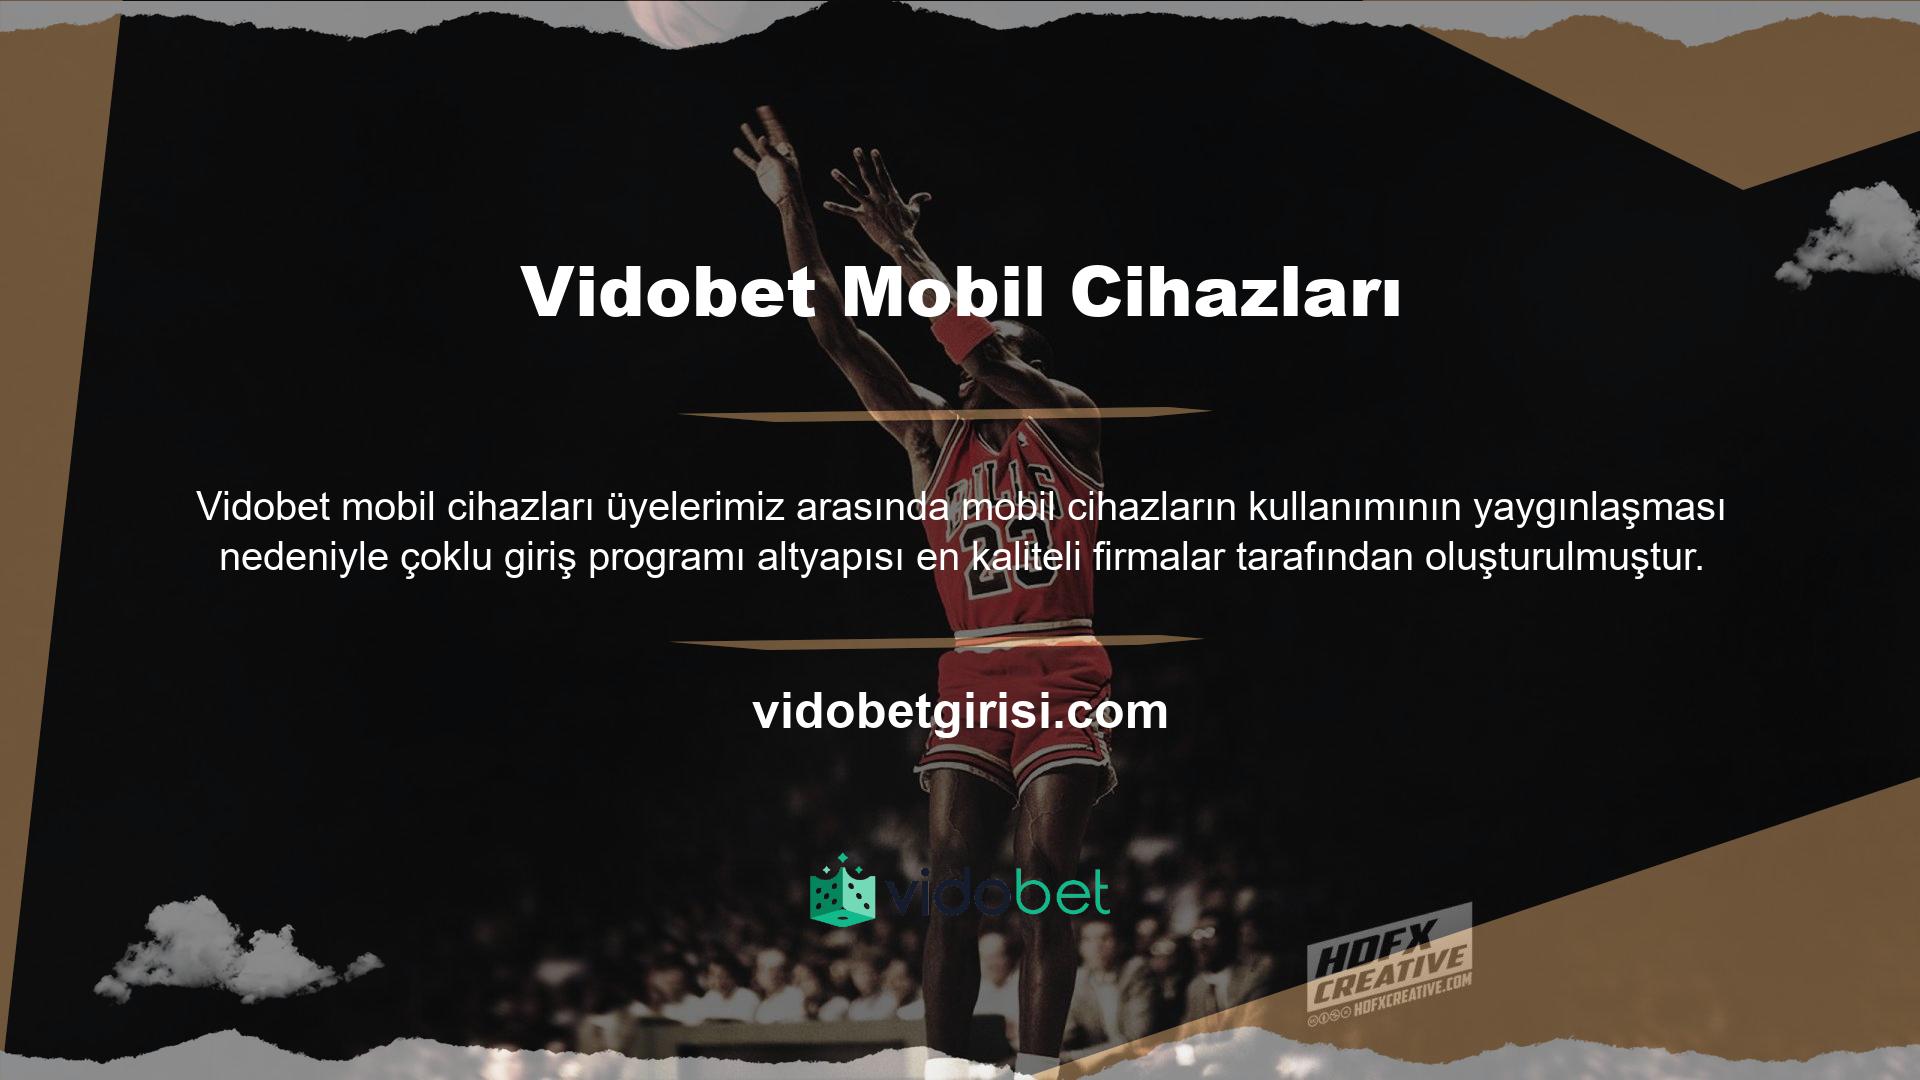 Vidobet, üyelerin para kazanabileceği bir ortama sahiptir